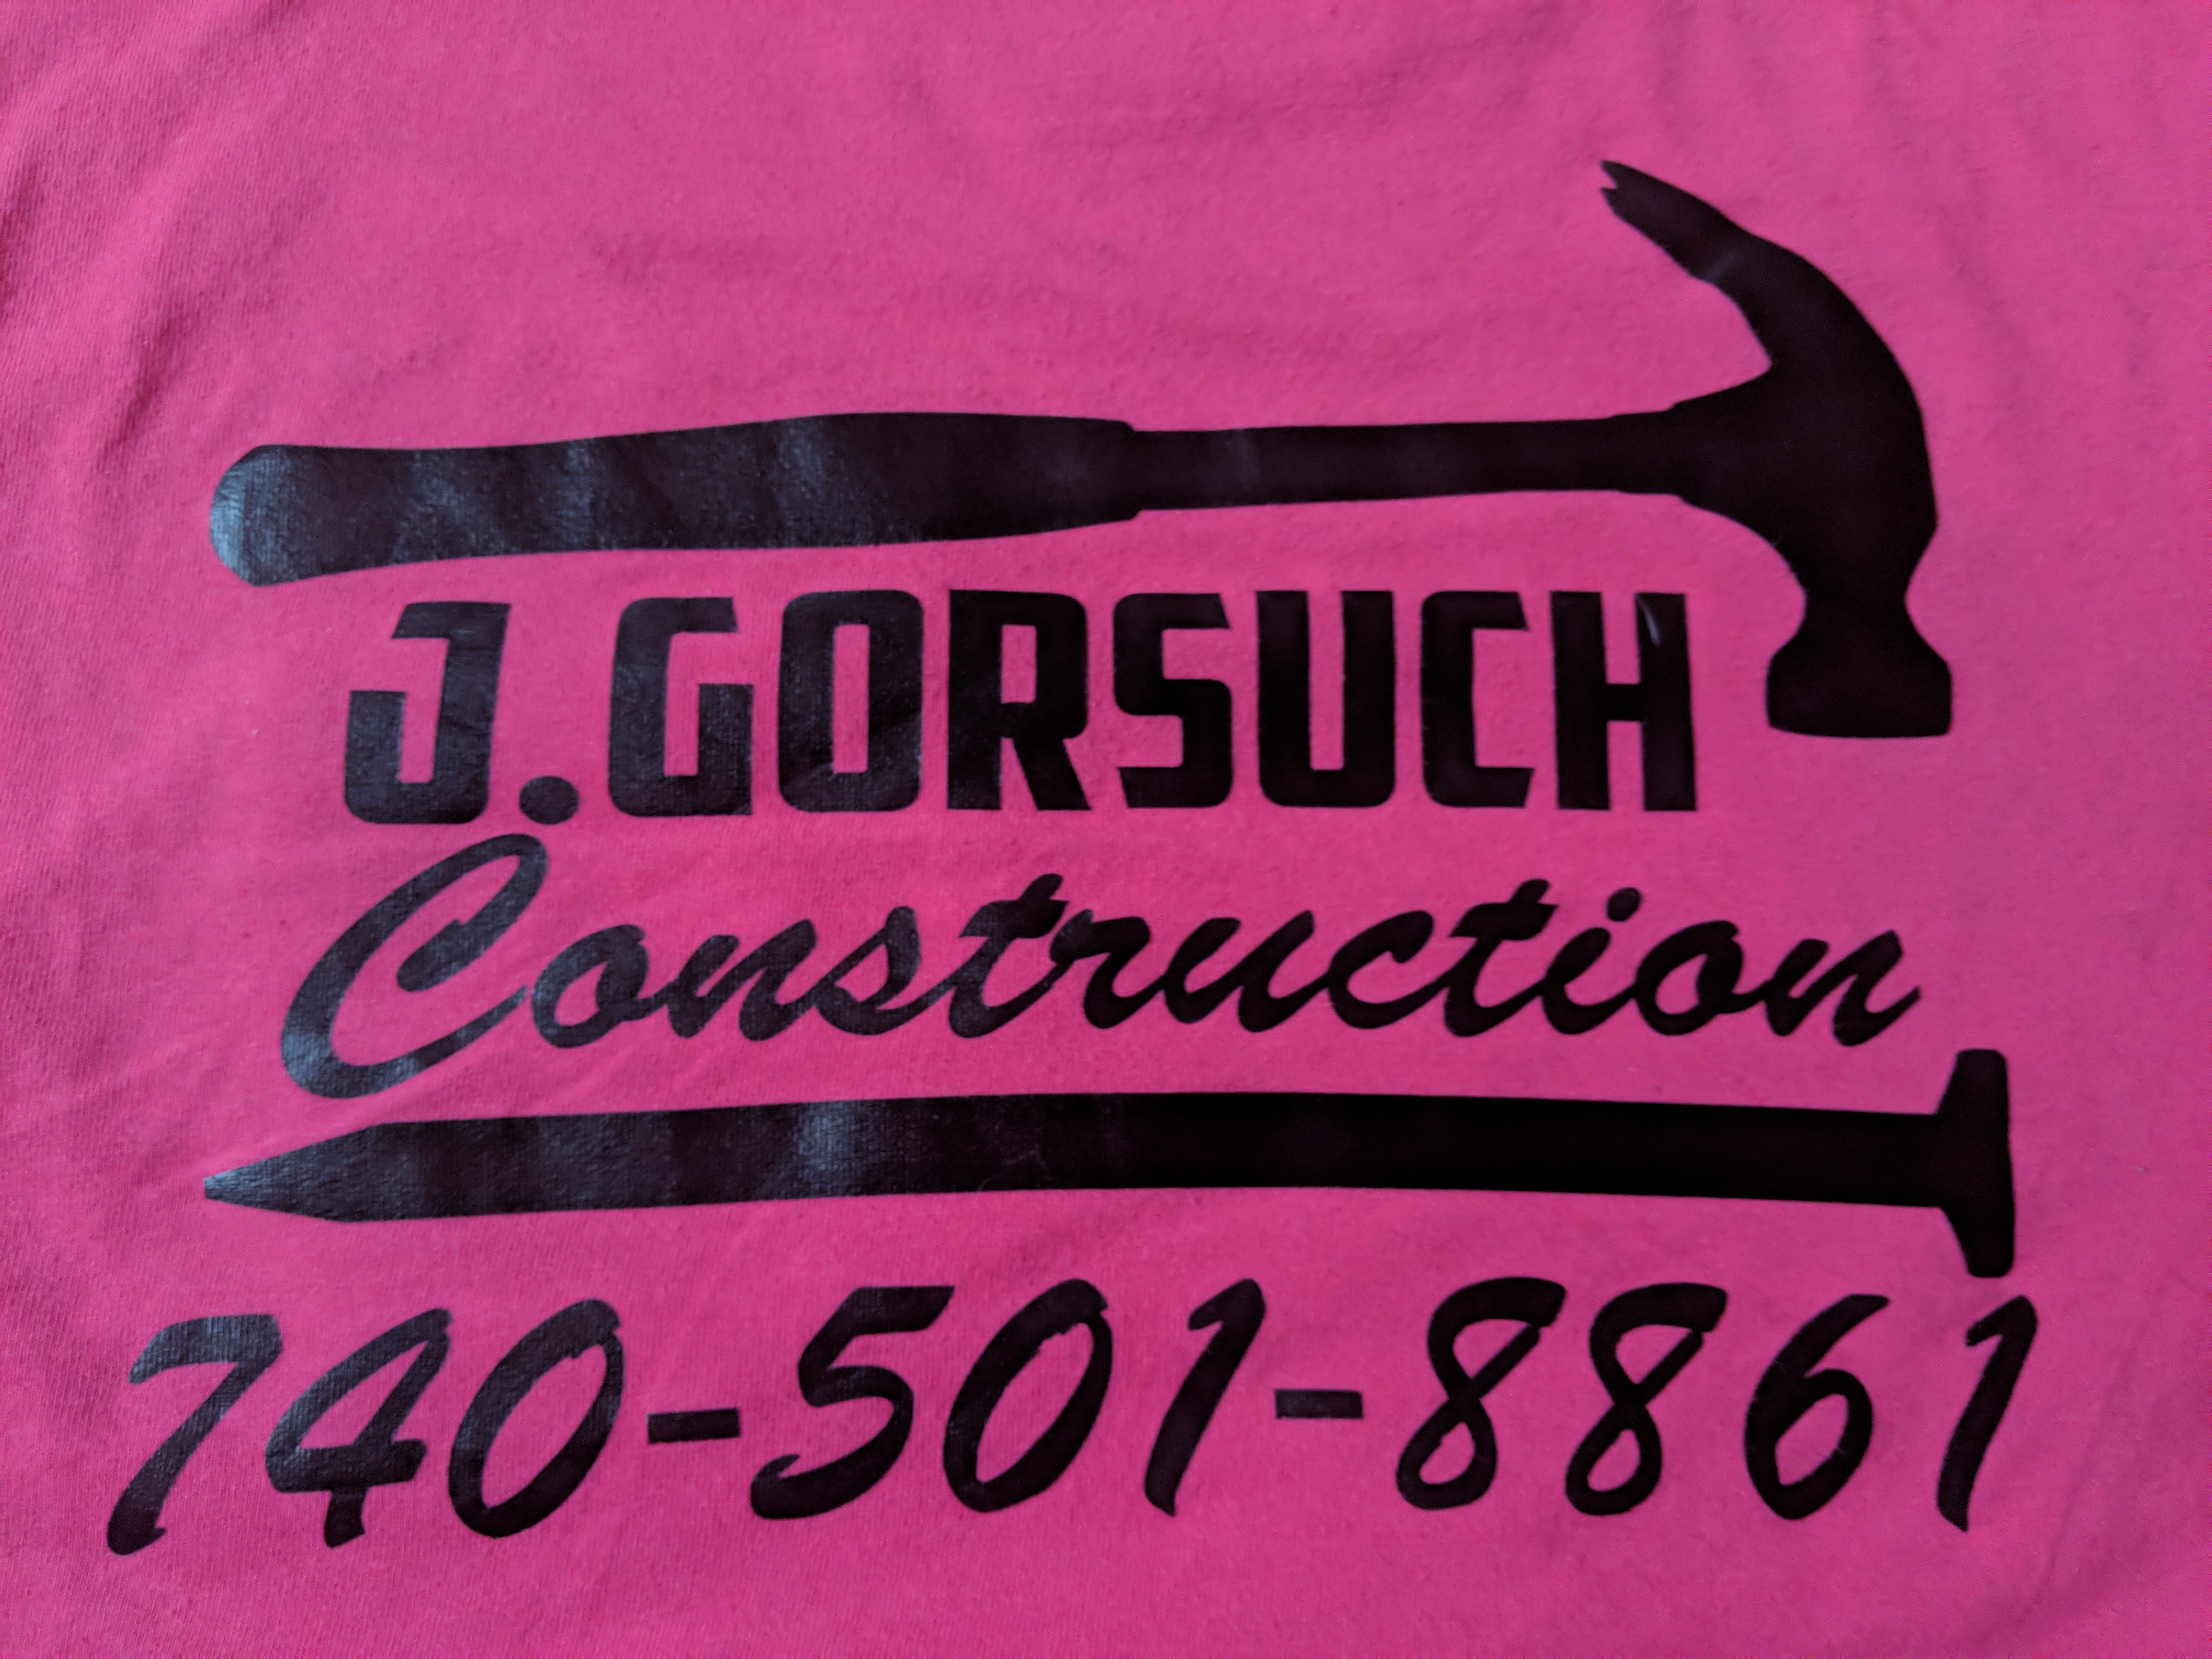 J. Gorsuch Construction, LLC Logo